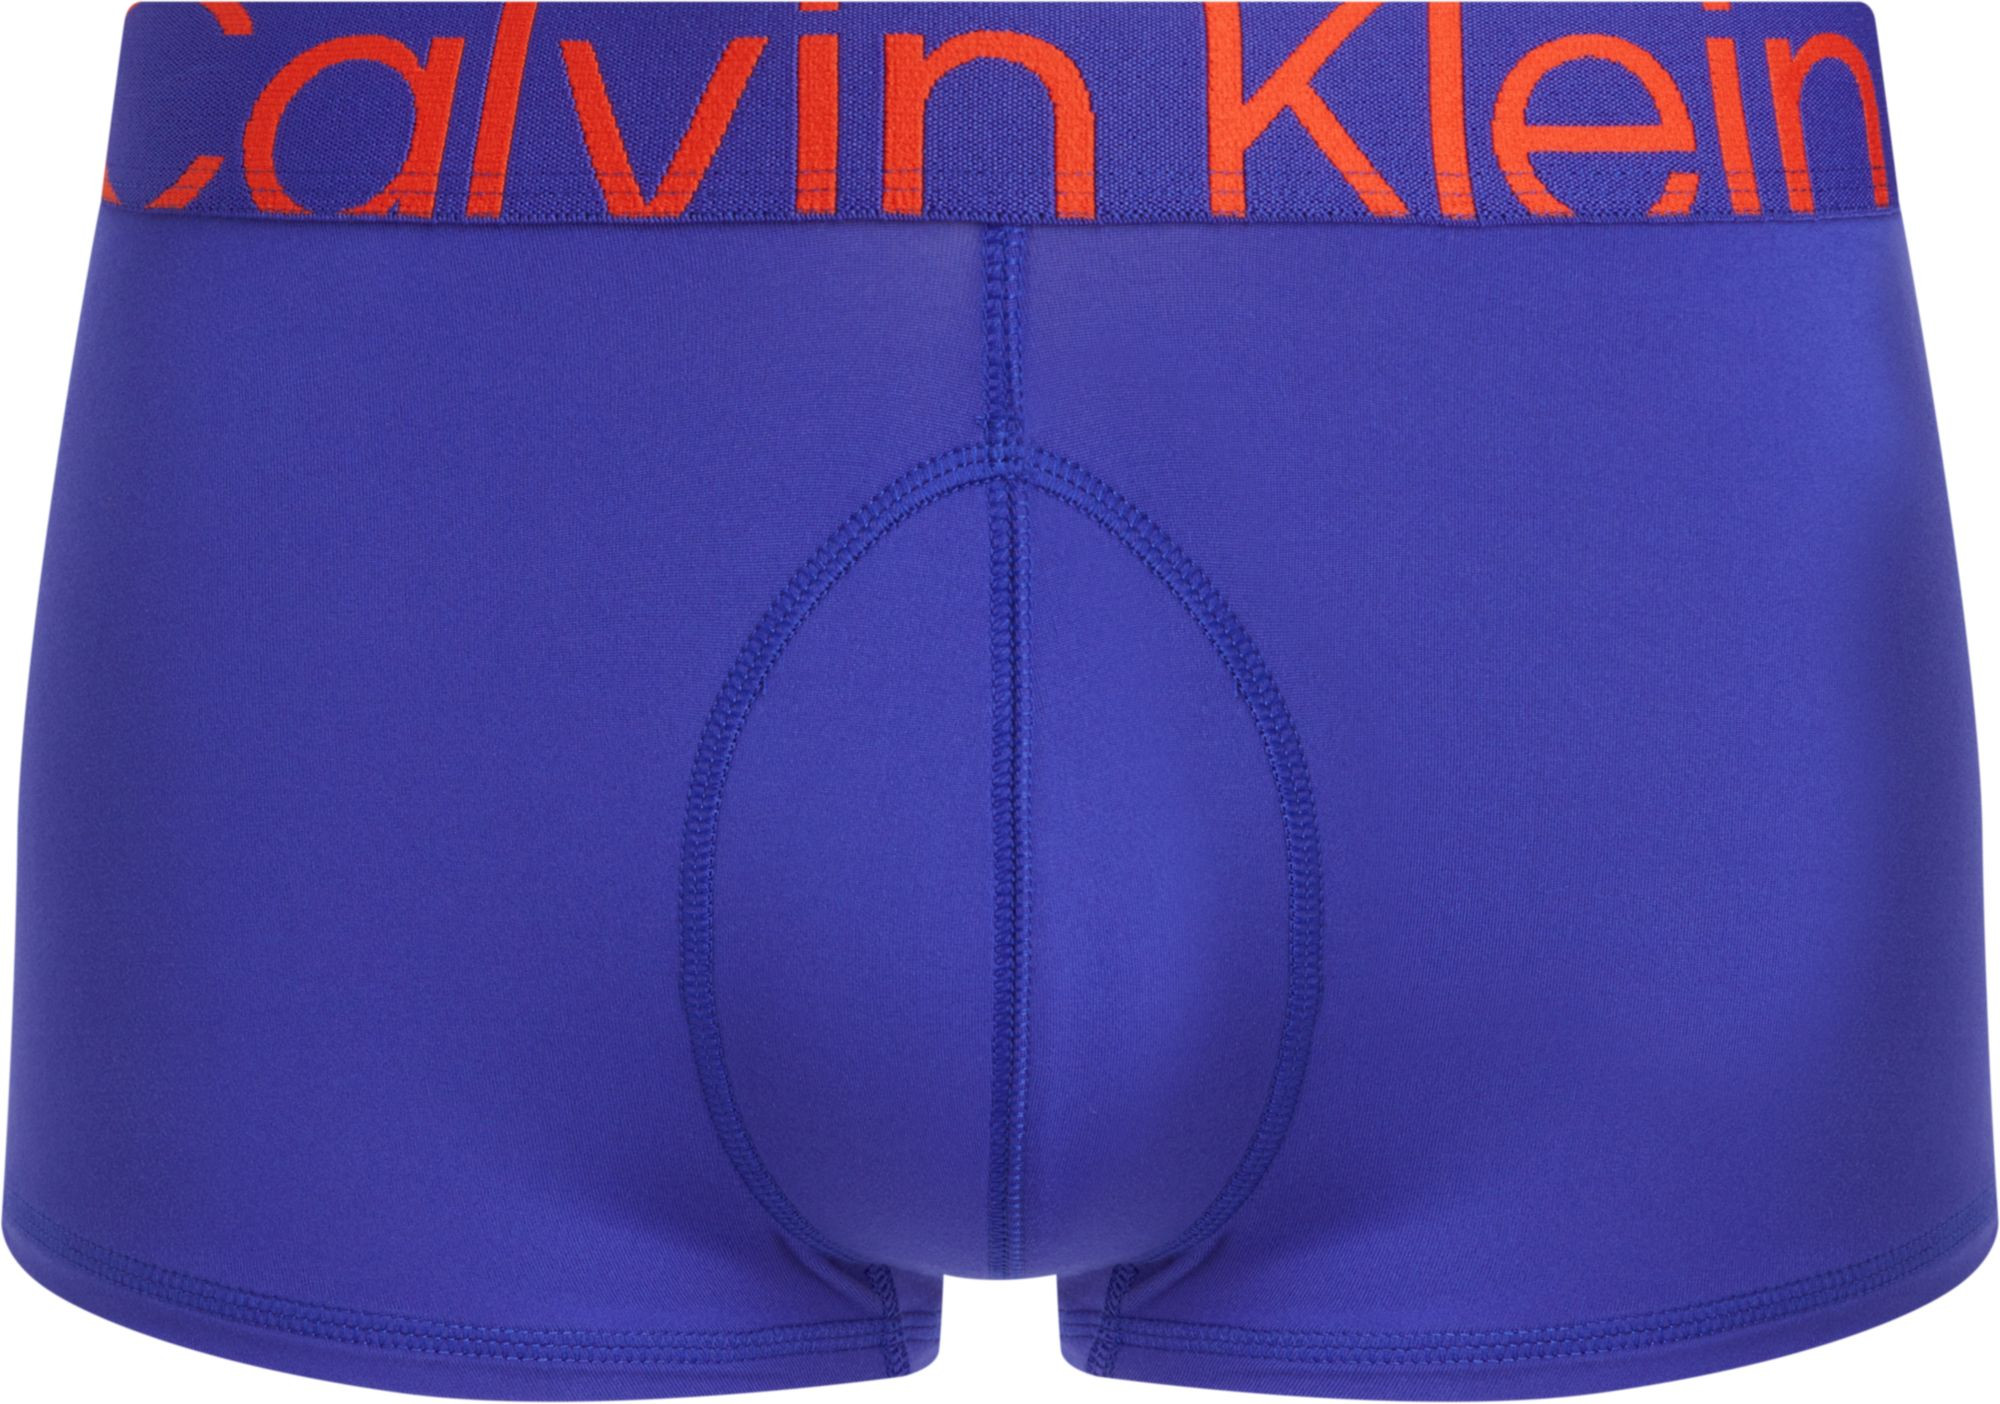 Pánské boxerky Low Rise Trunks Future Shift 000NB3656A FPT modré - Calvin Klein XL